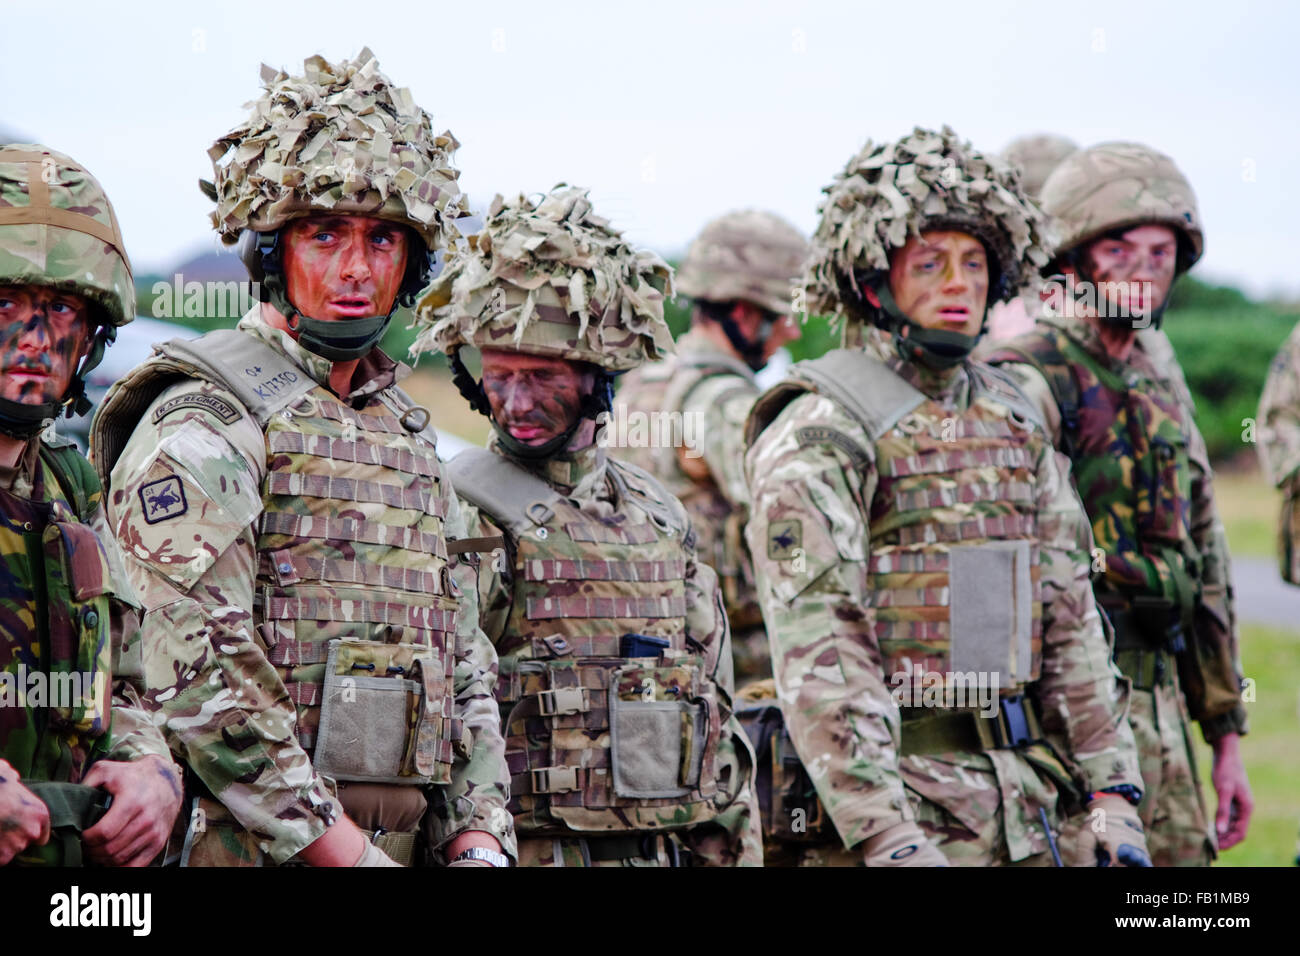 Royal Air Force RAF regiment soldats alignés dans leur camouflage gilets pare avant un exercice d'entraînement. Banque D'Images